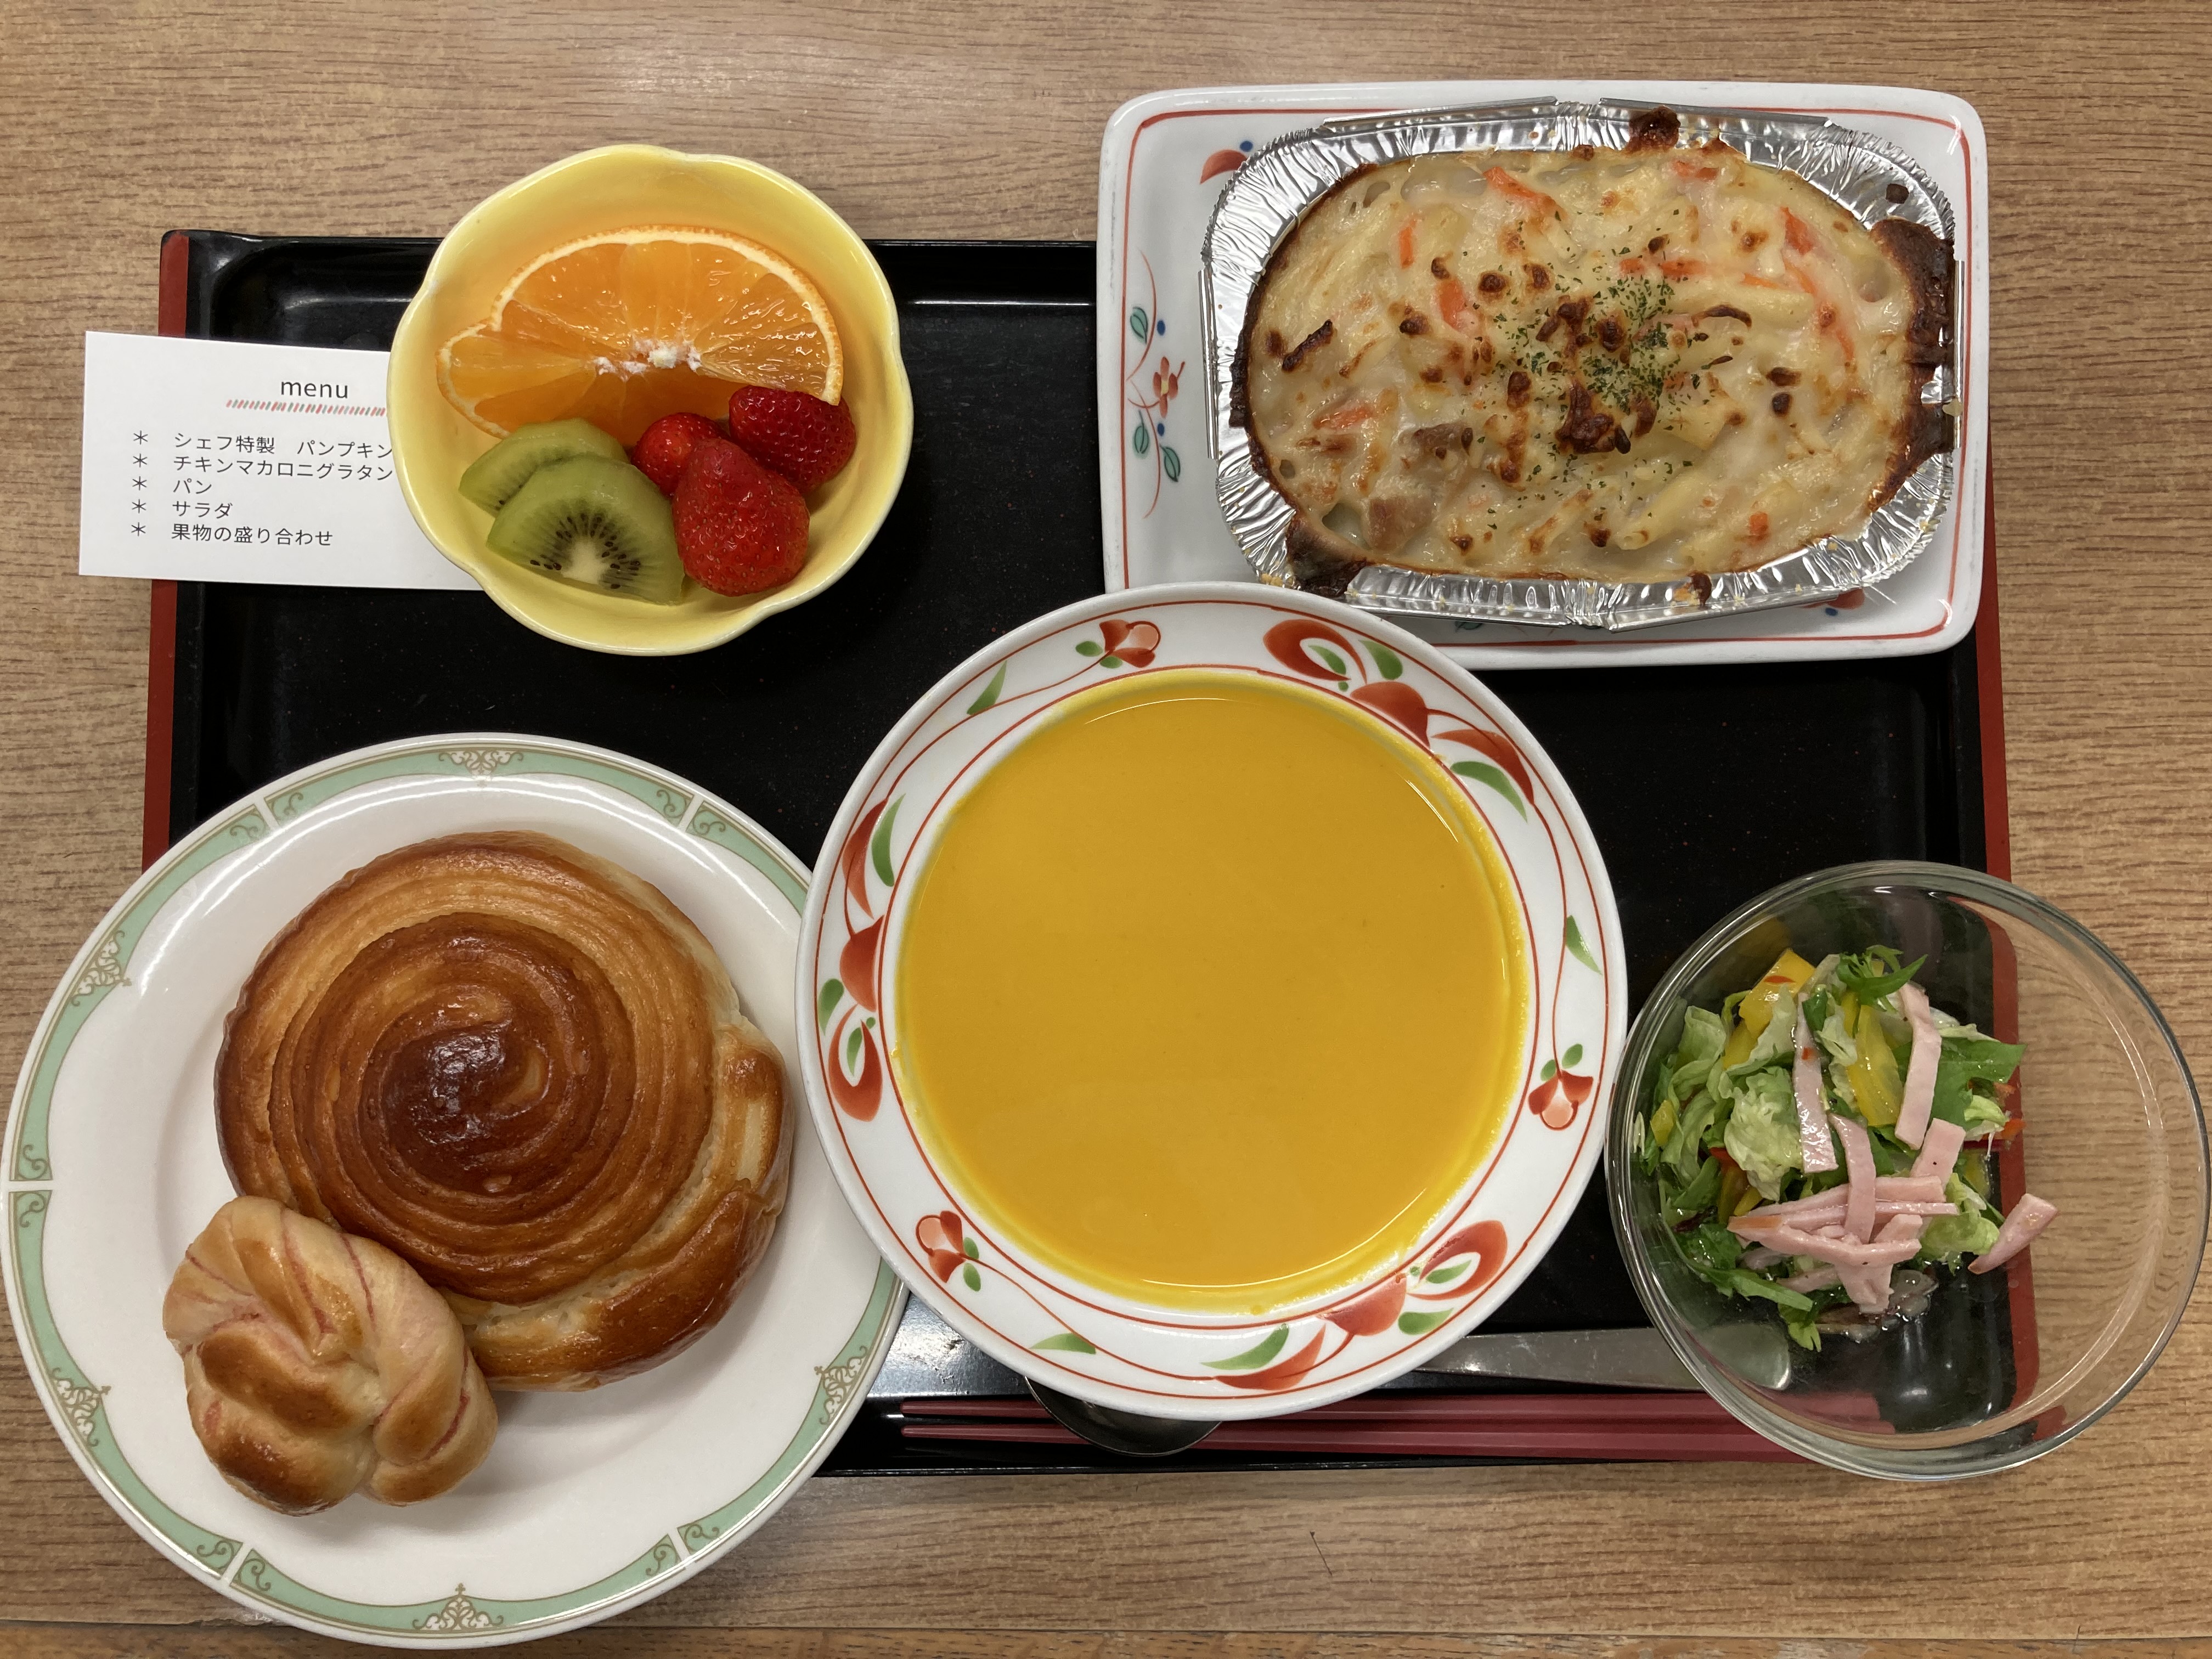 上柿元勝シェフのスープの提供がありました。